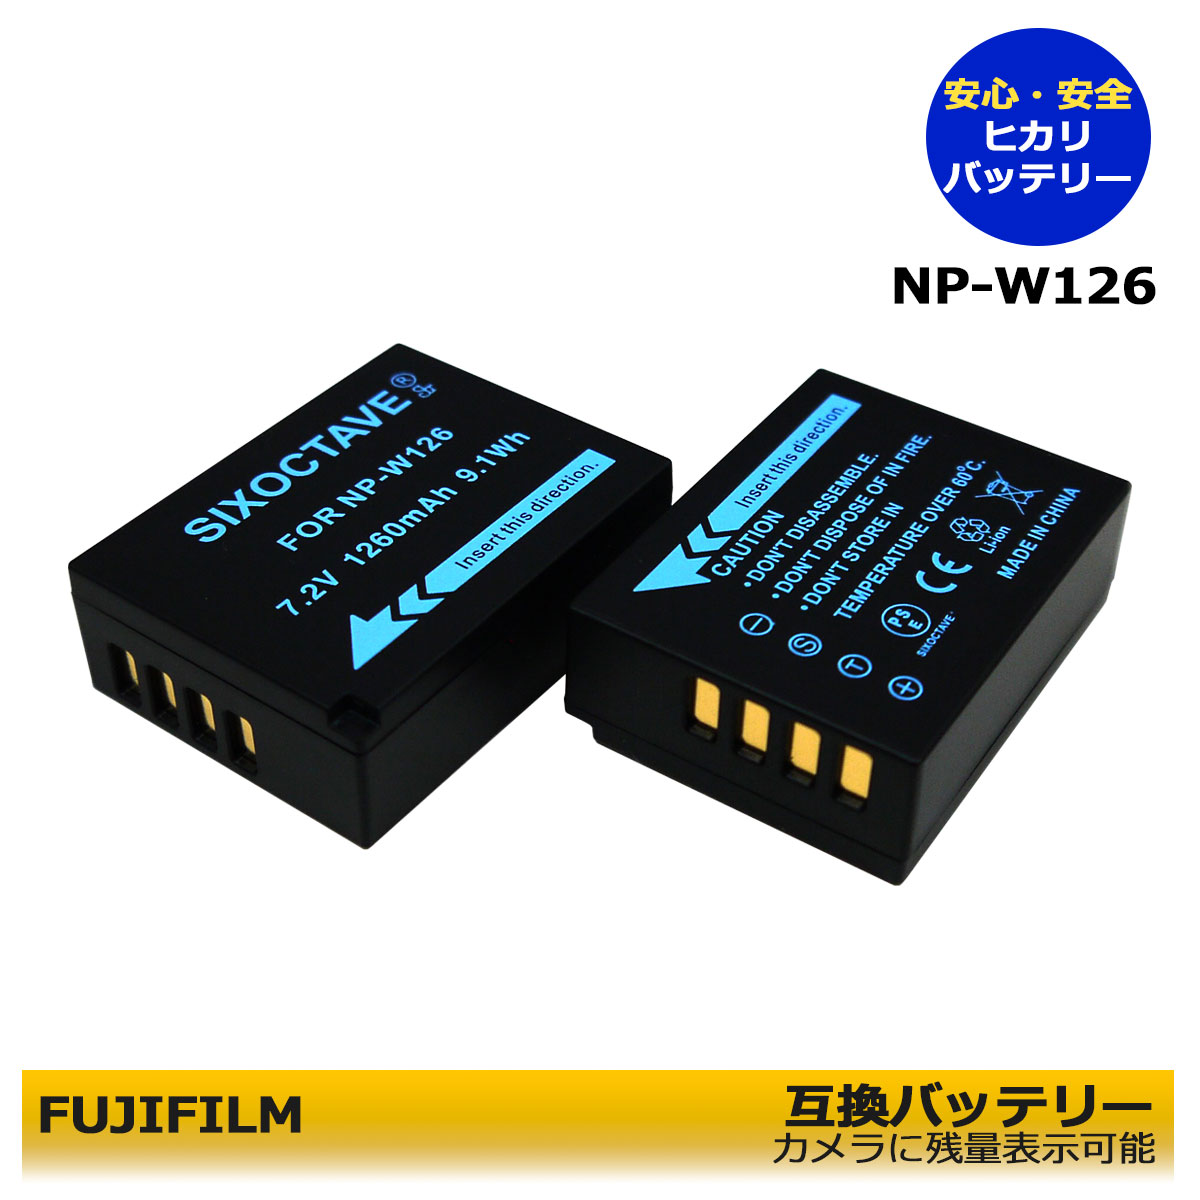 富士フィルム NP-W126 互換バッテリー 2...の商品画像